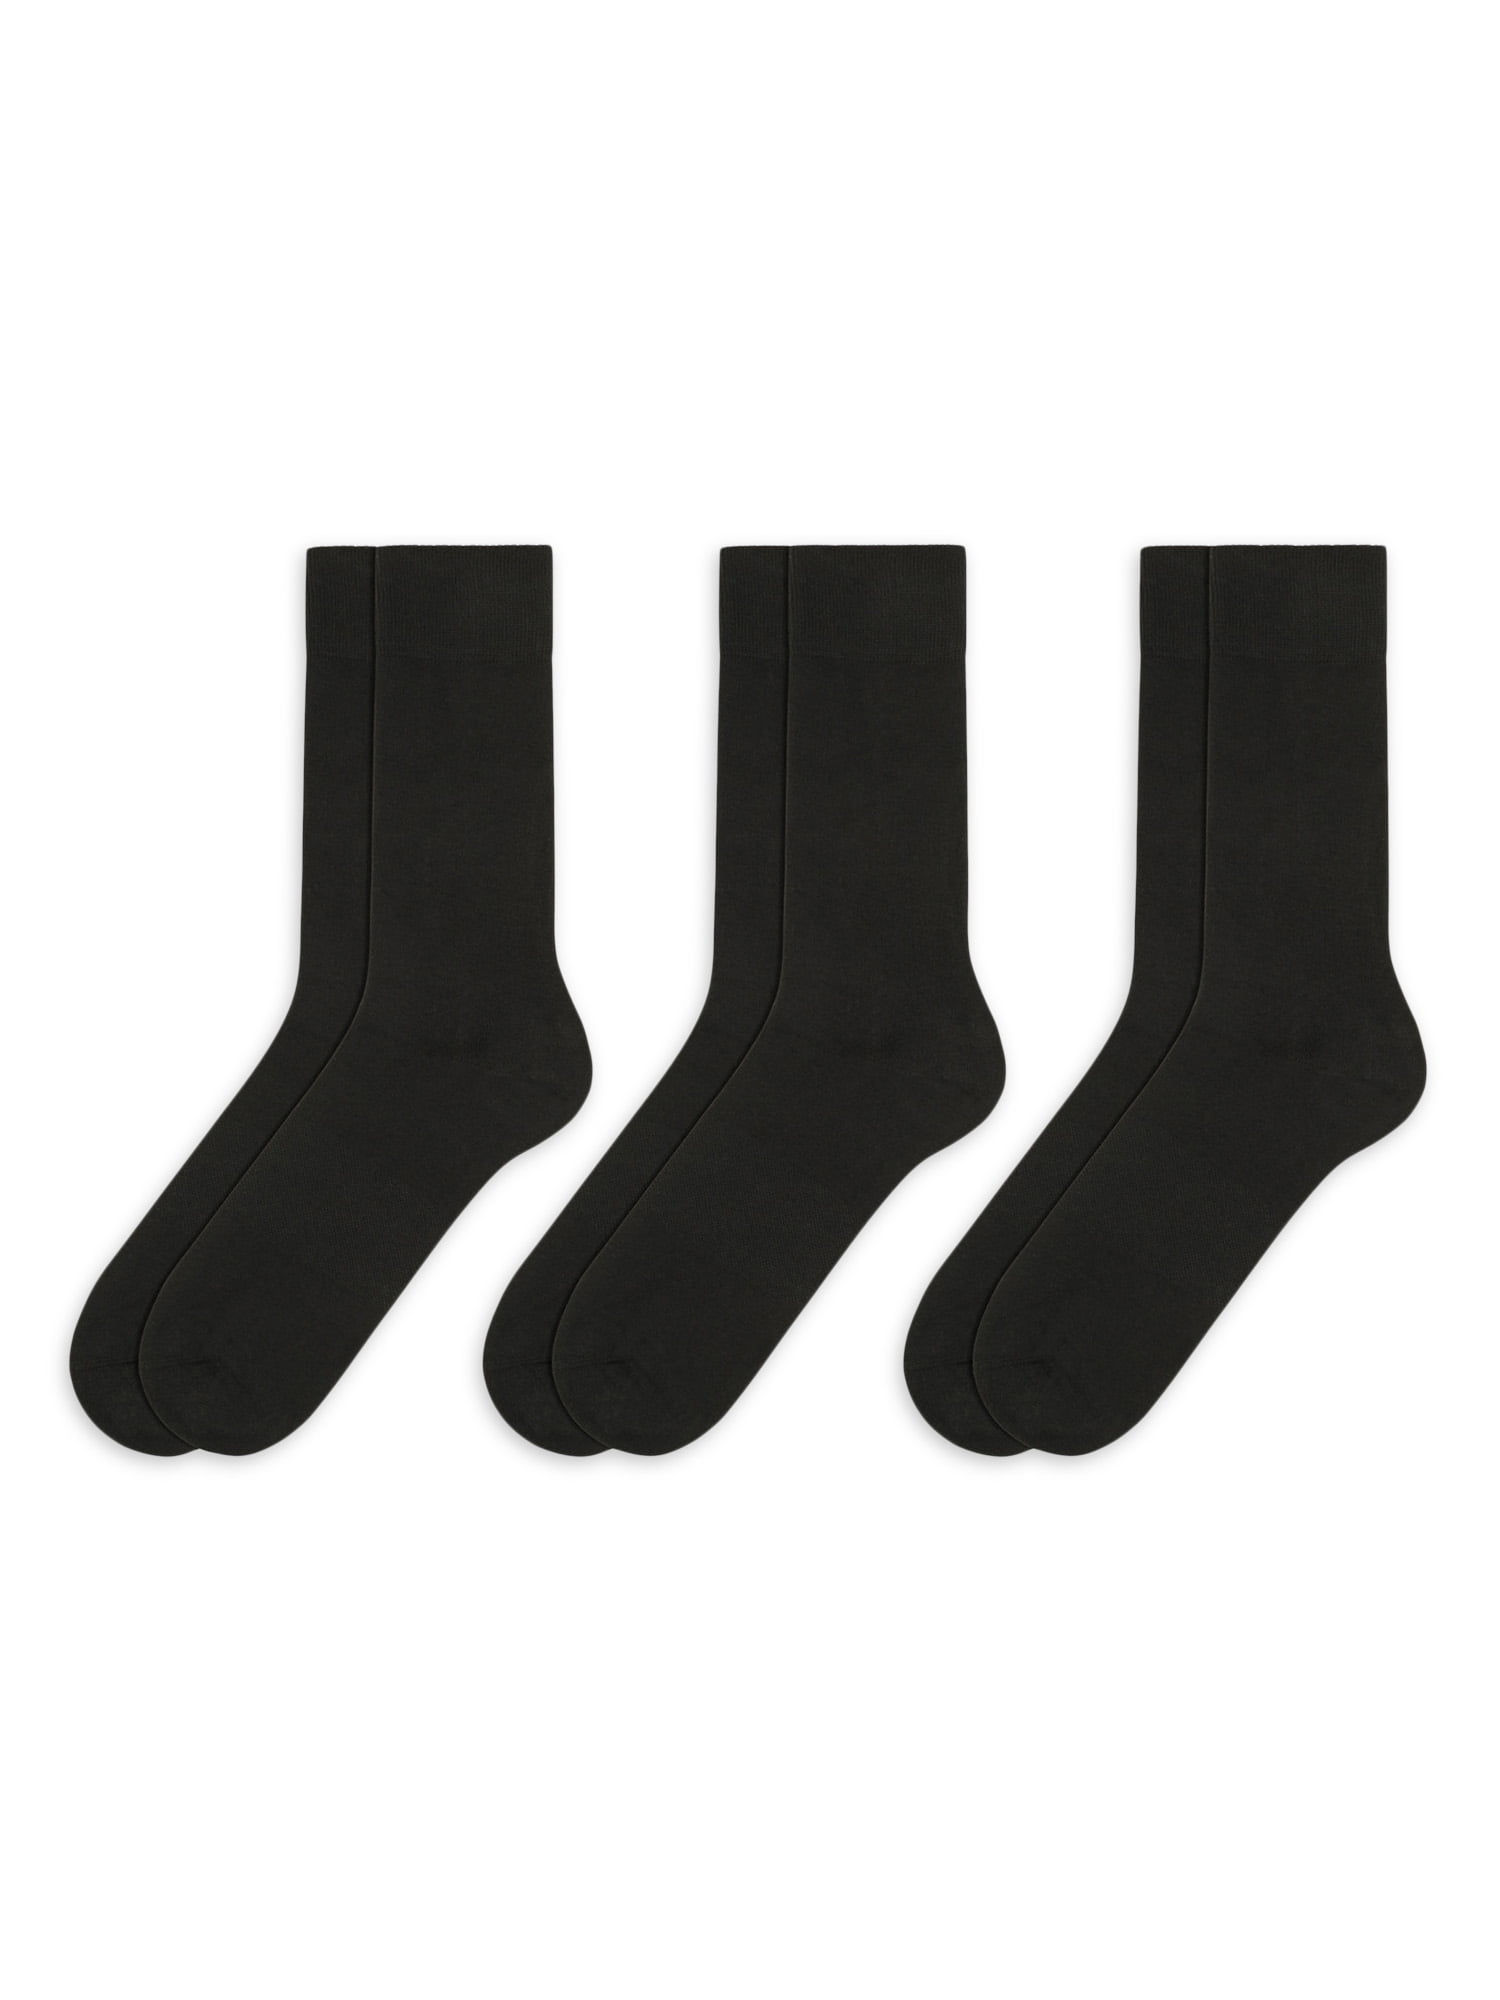 NWT Men’s George Dress Socks 4 Pair Tan w/ Black Dots Size Large 